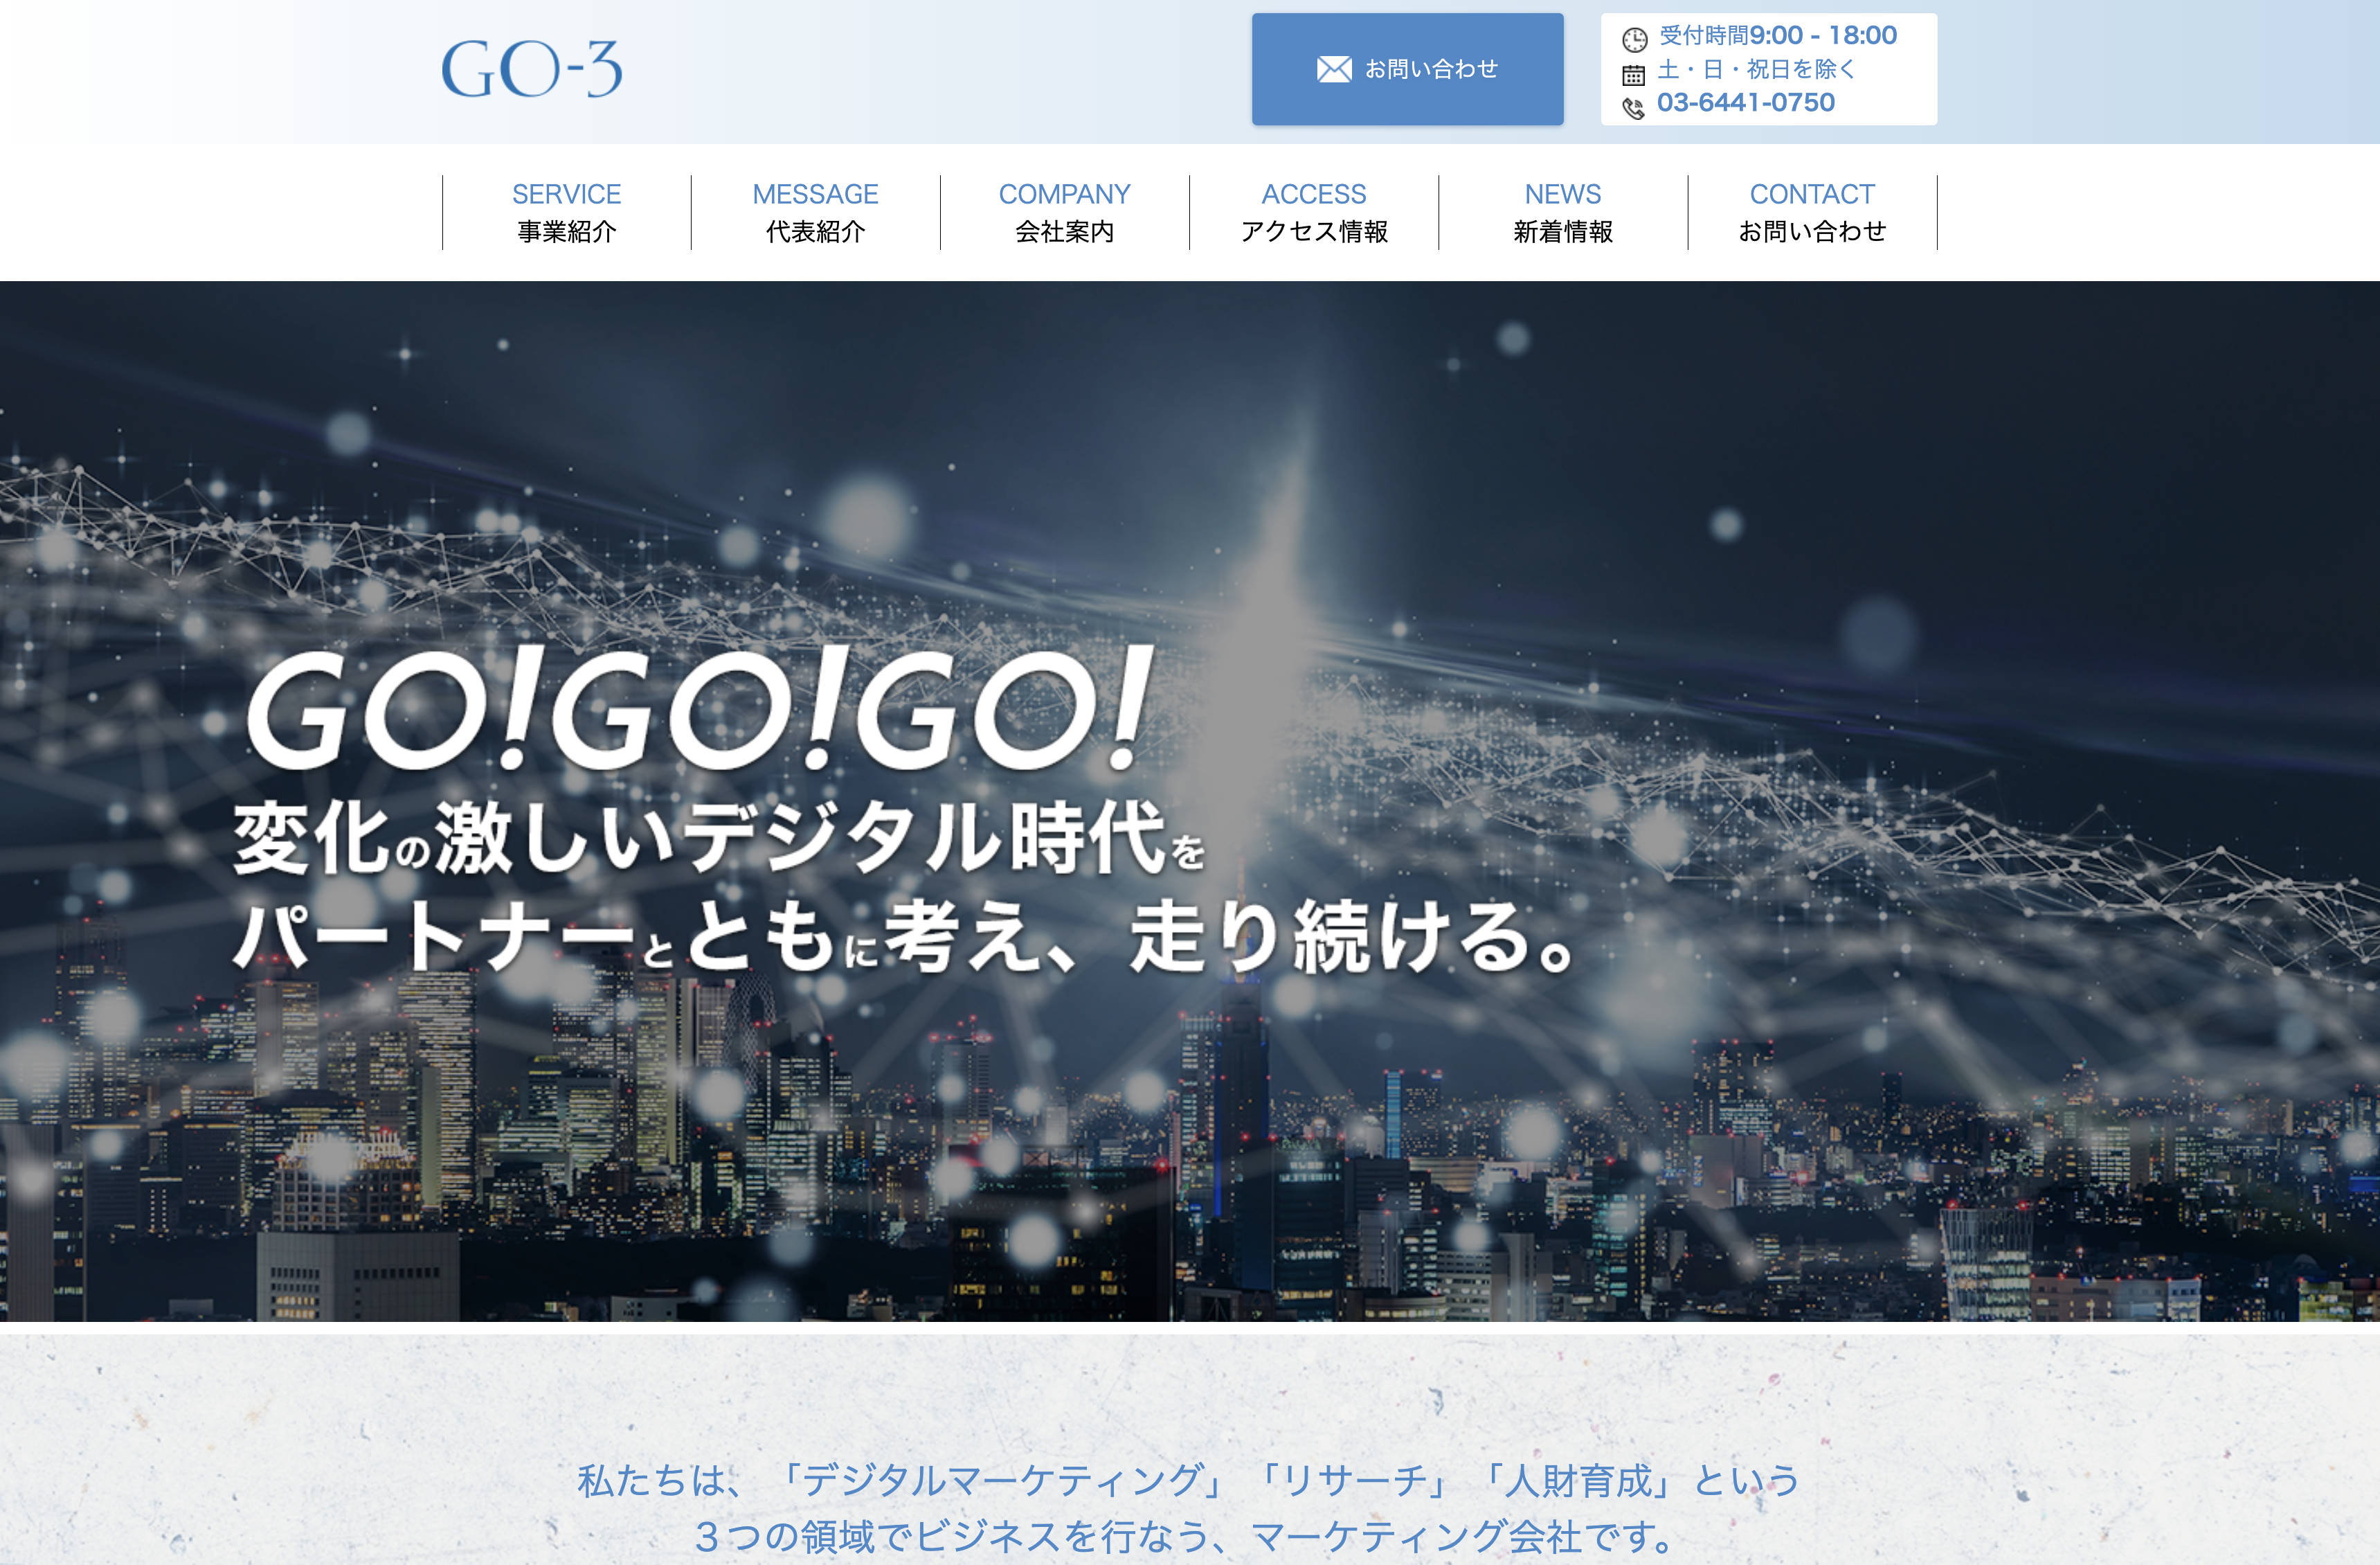 株式会社GO-3の株式会社GO-3:Web広告サービス